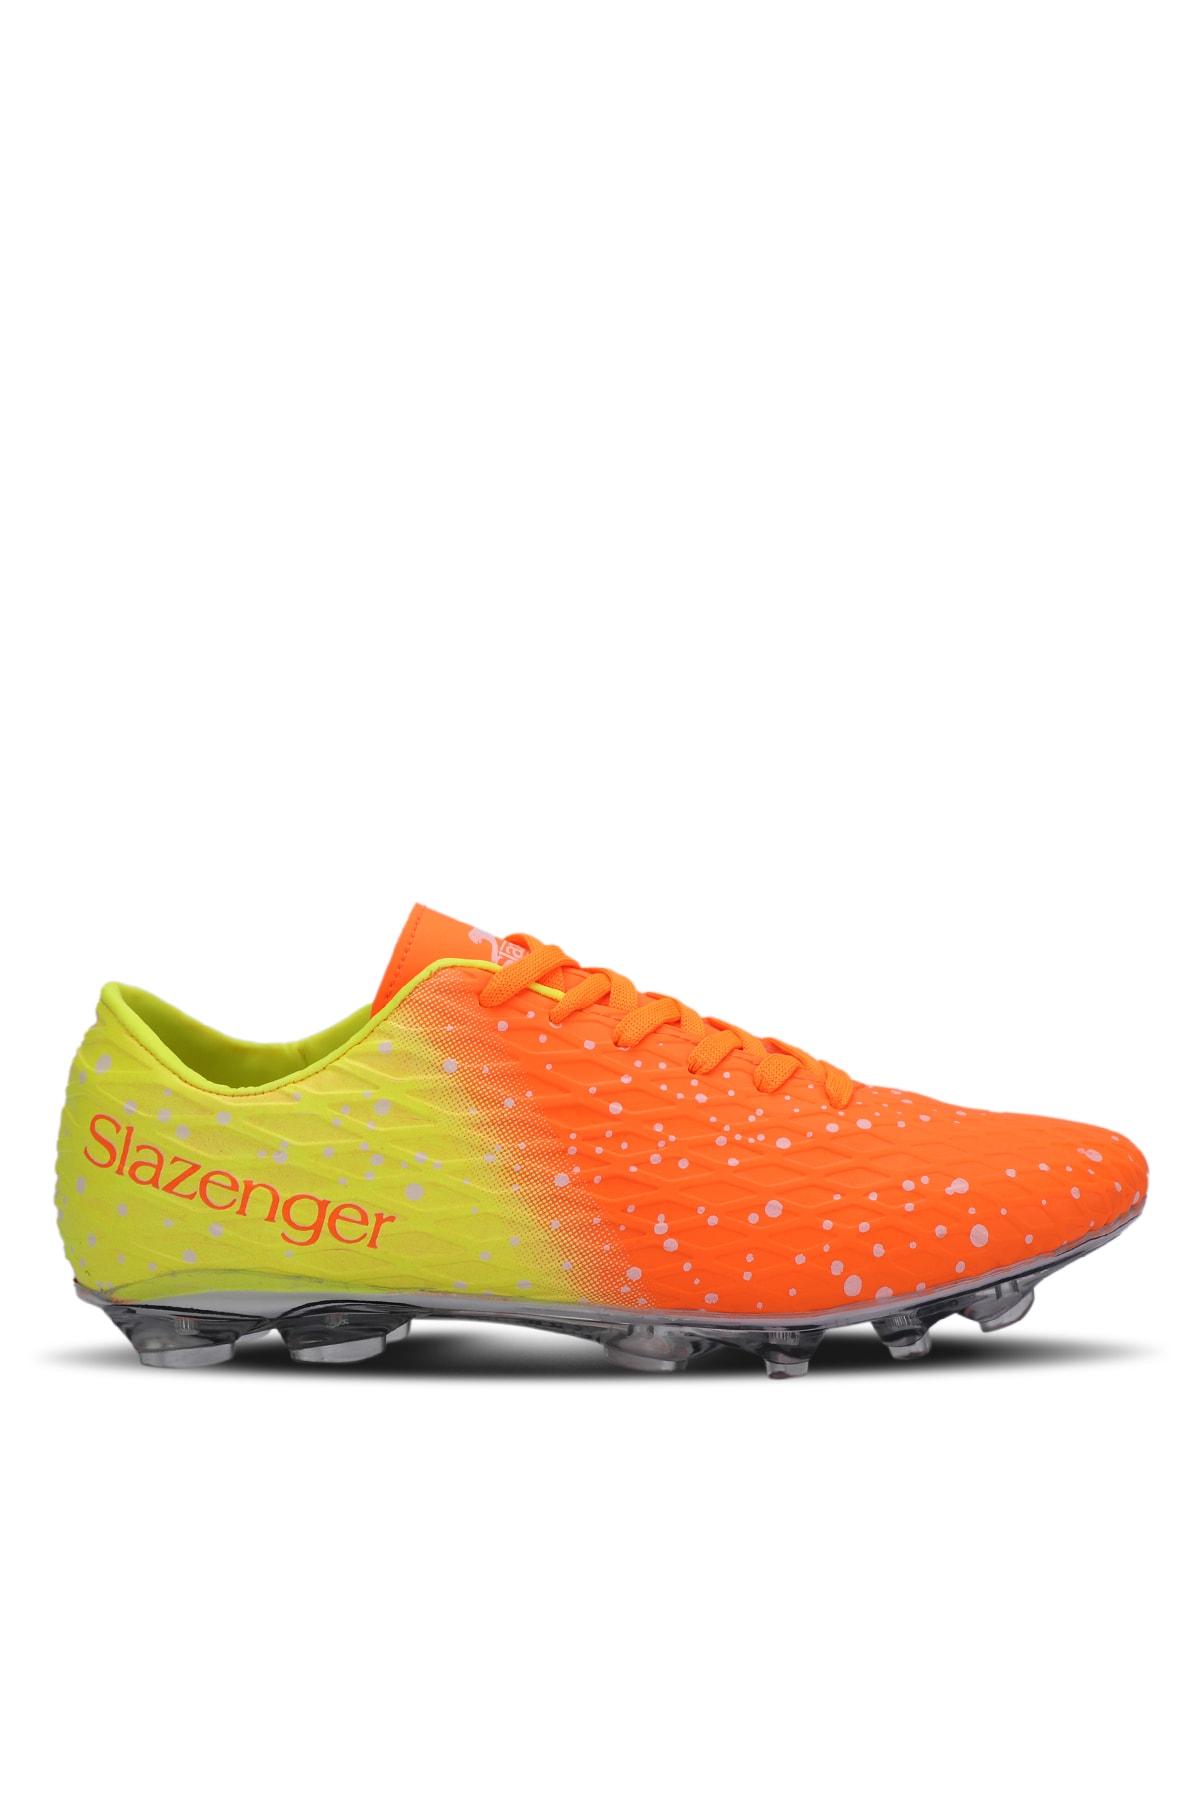 Slazenger Hania Krp Football Men's Astroturf Shoes Orange.